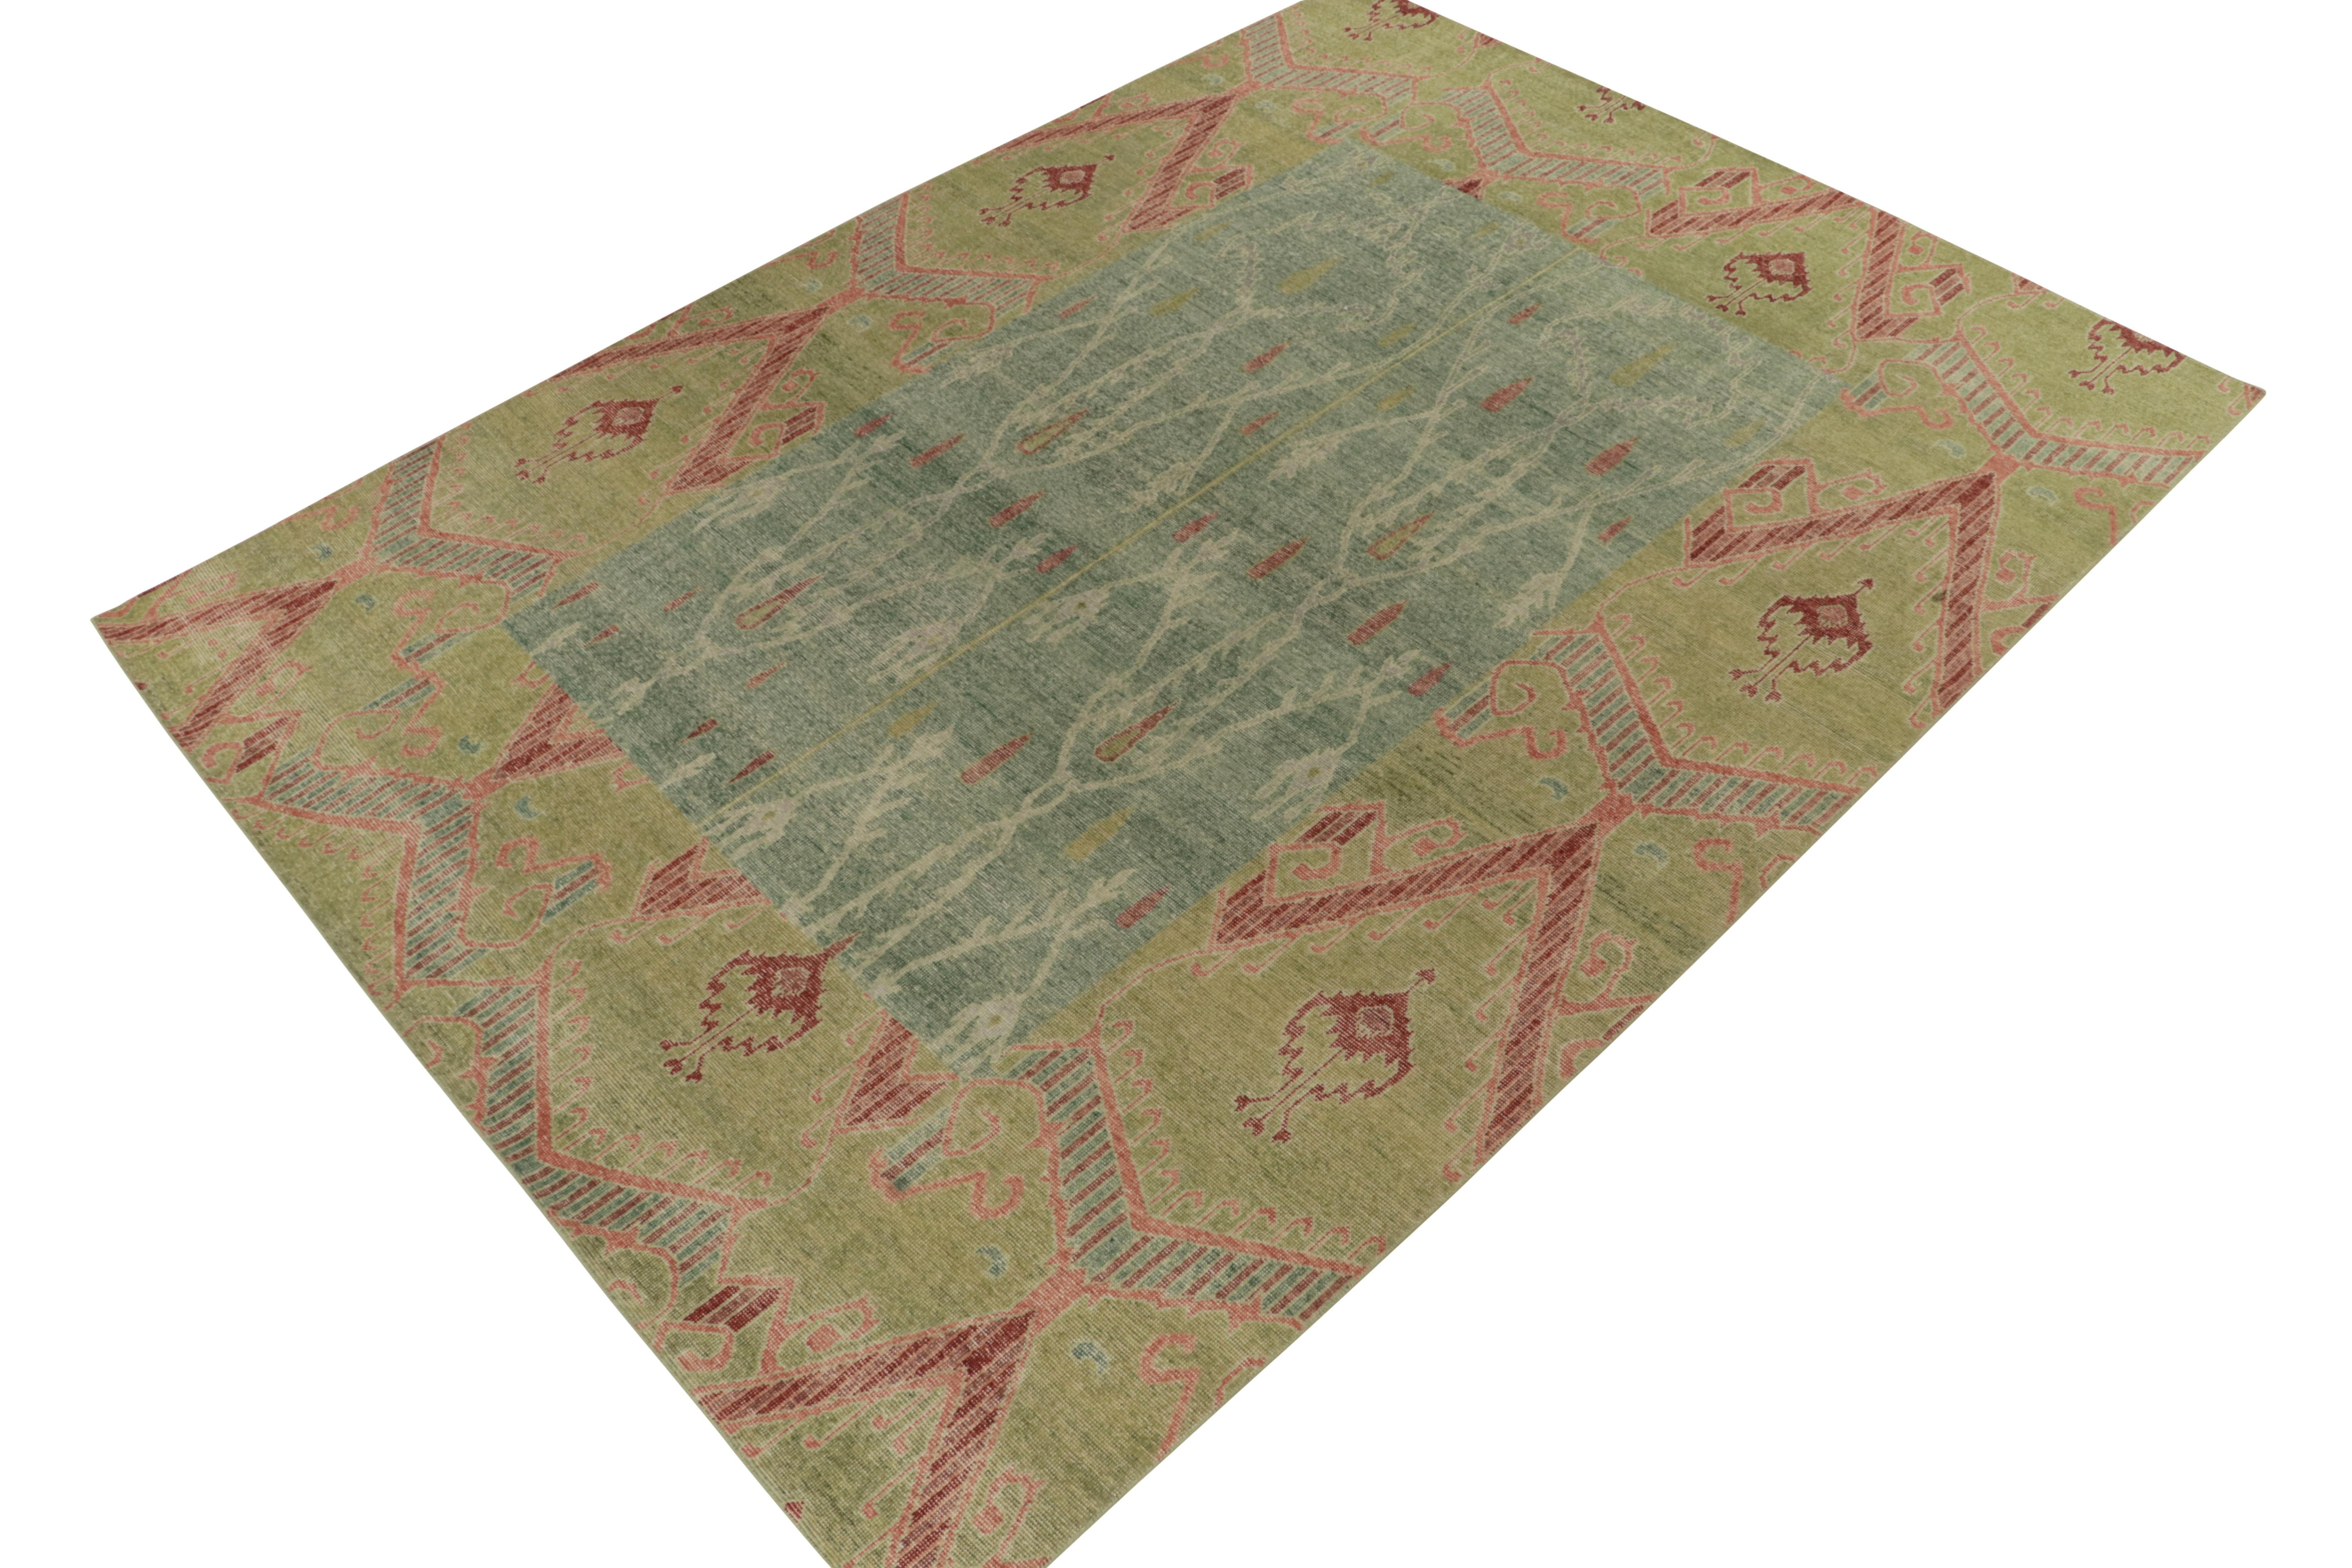 Un magnifique tapis 9x12 en laine nouée à la main de la collection Homage de Rug & Kilim, une encyclopédie texturale audacieuse de motifs et de styles emblématiques. 

Cette inspiration classique est une version ouzbèke du 19ème siècle des motifs